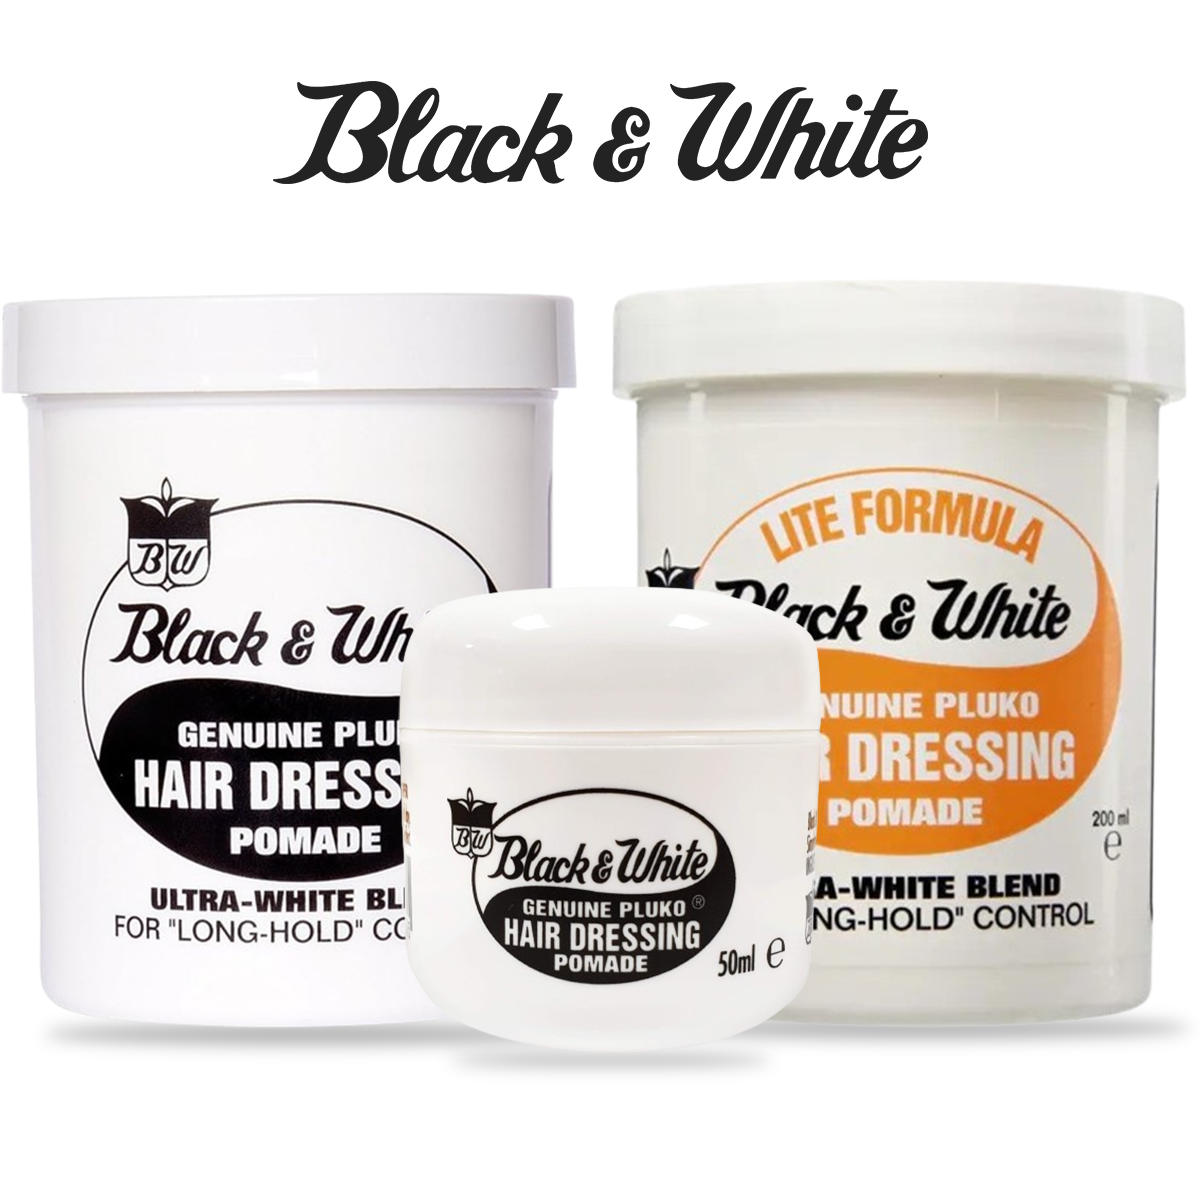 BLACK & WHITE GENUINE PLUKO HAIR DRESSING POMADE FULL RANGE